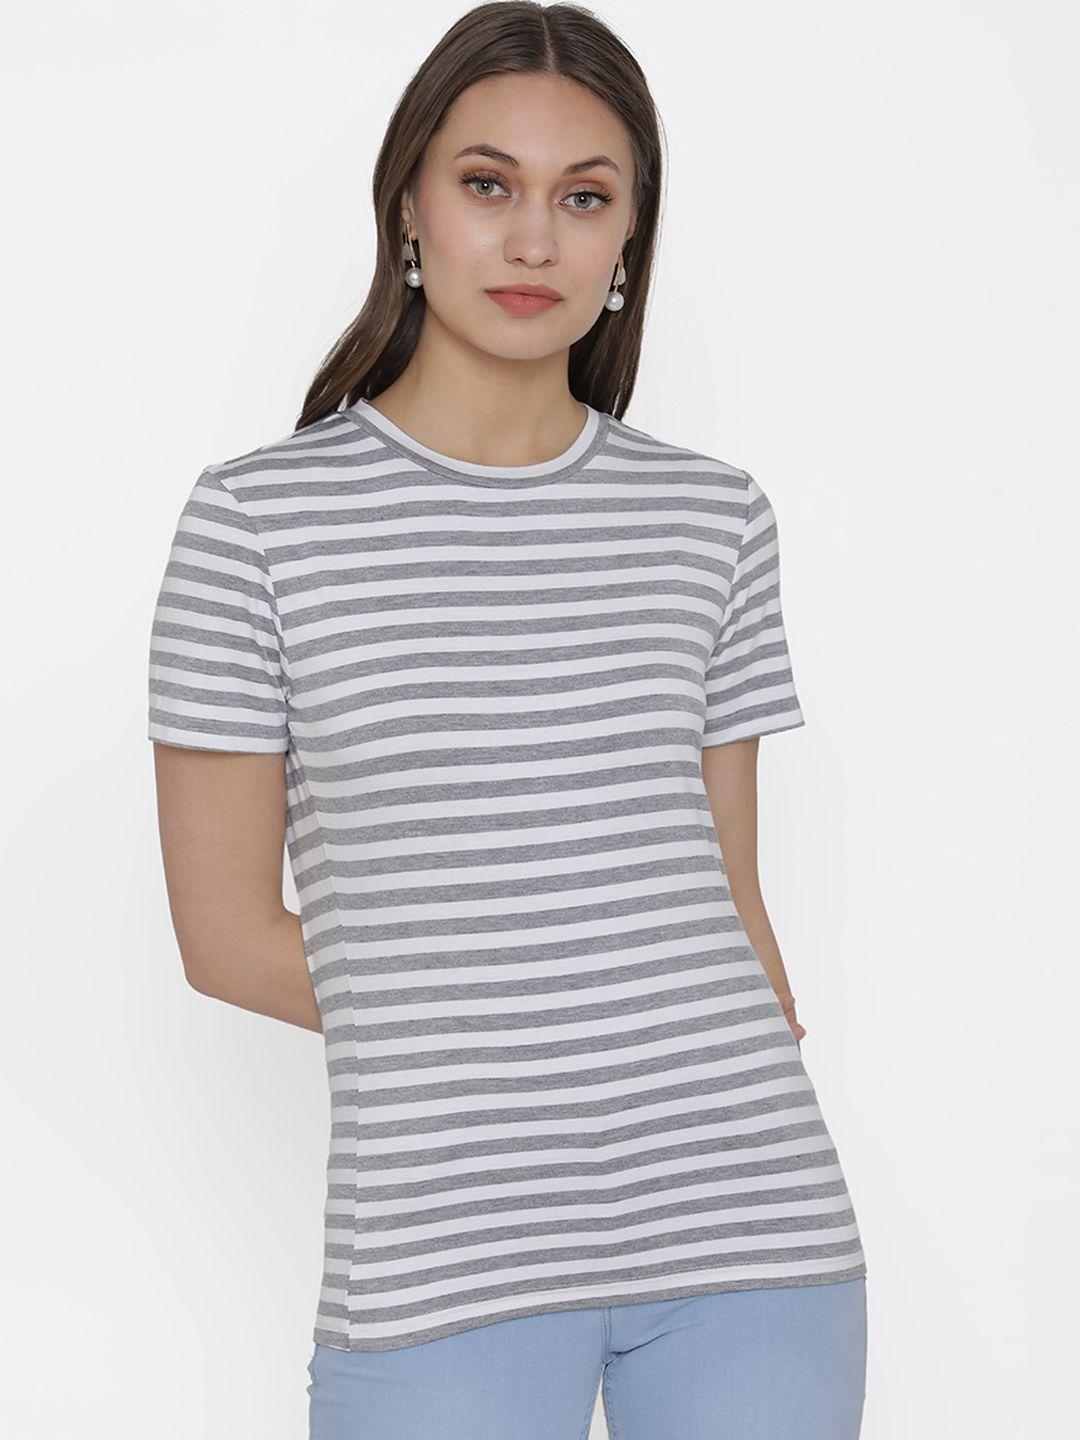 door74 women grey & white striped round neck t-shirt